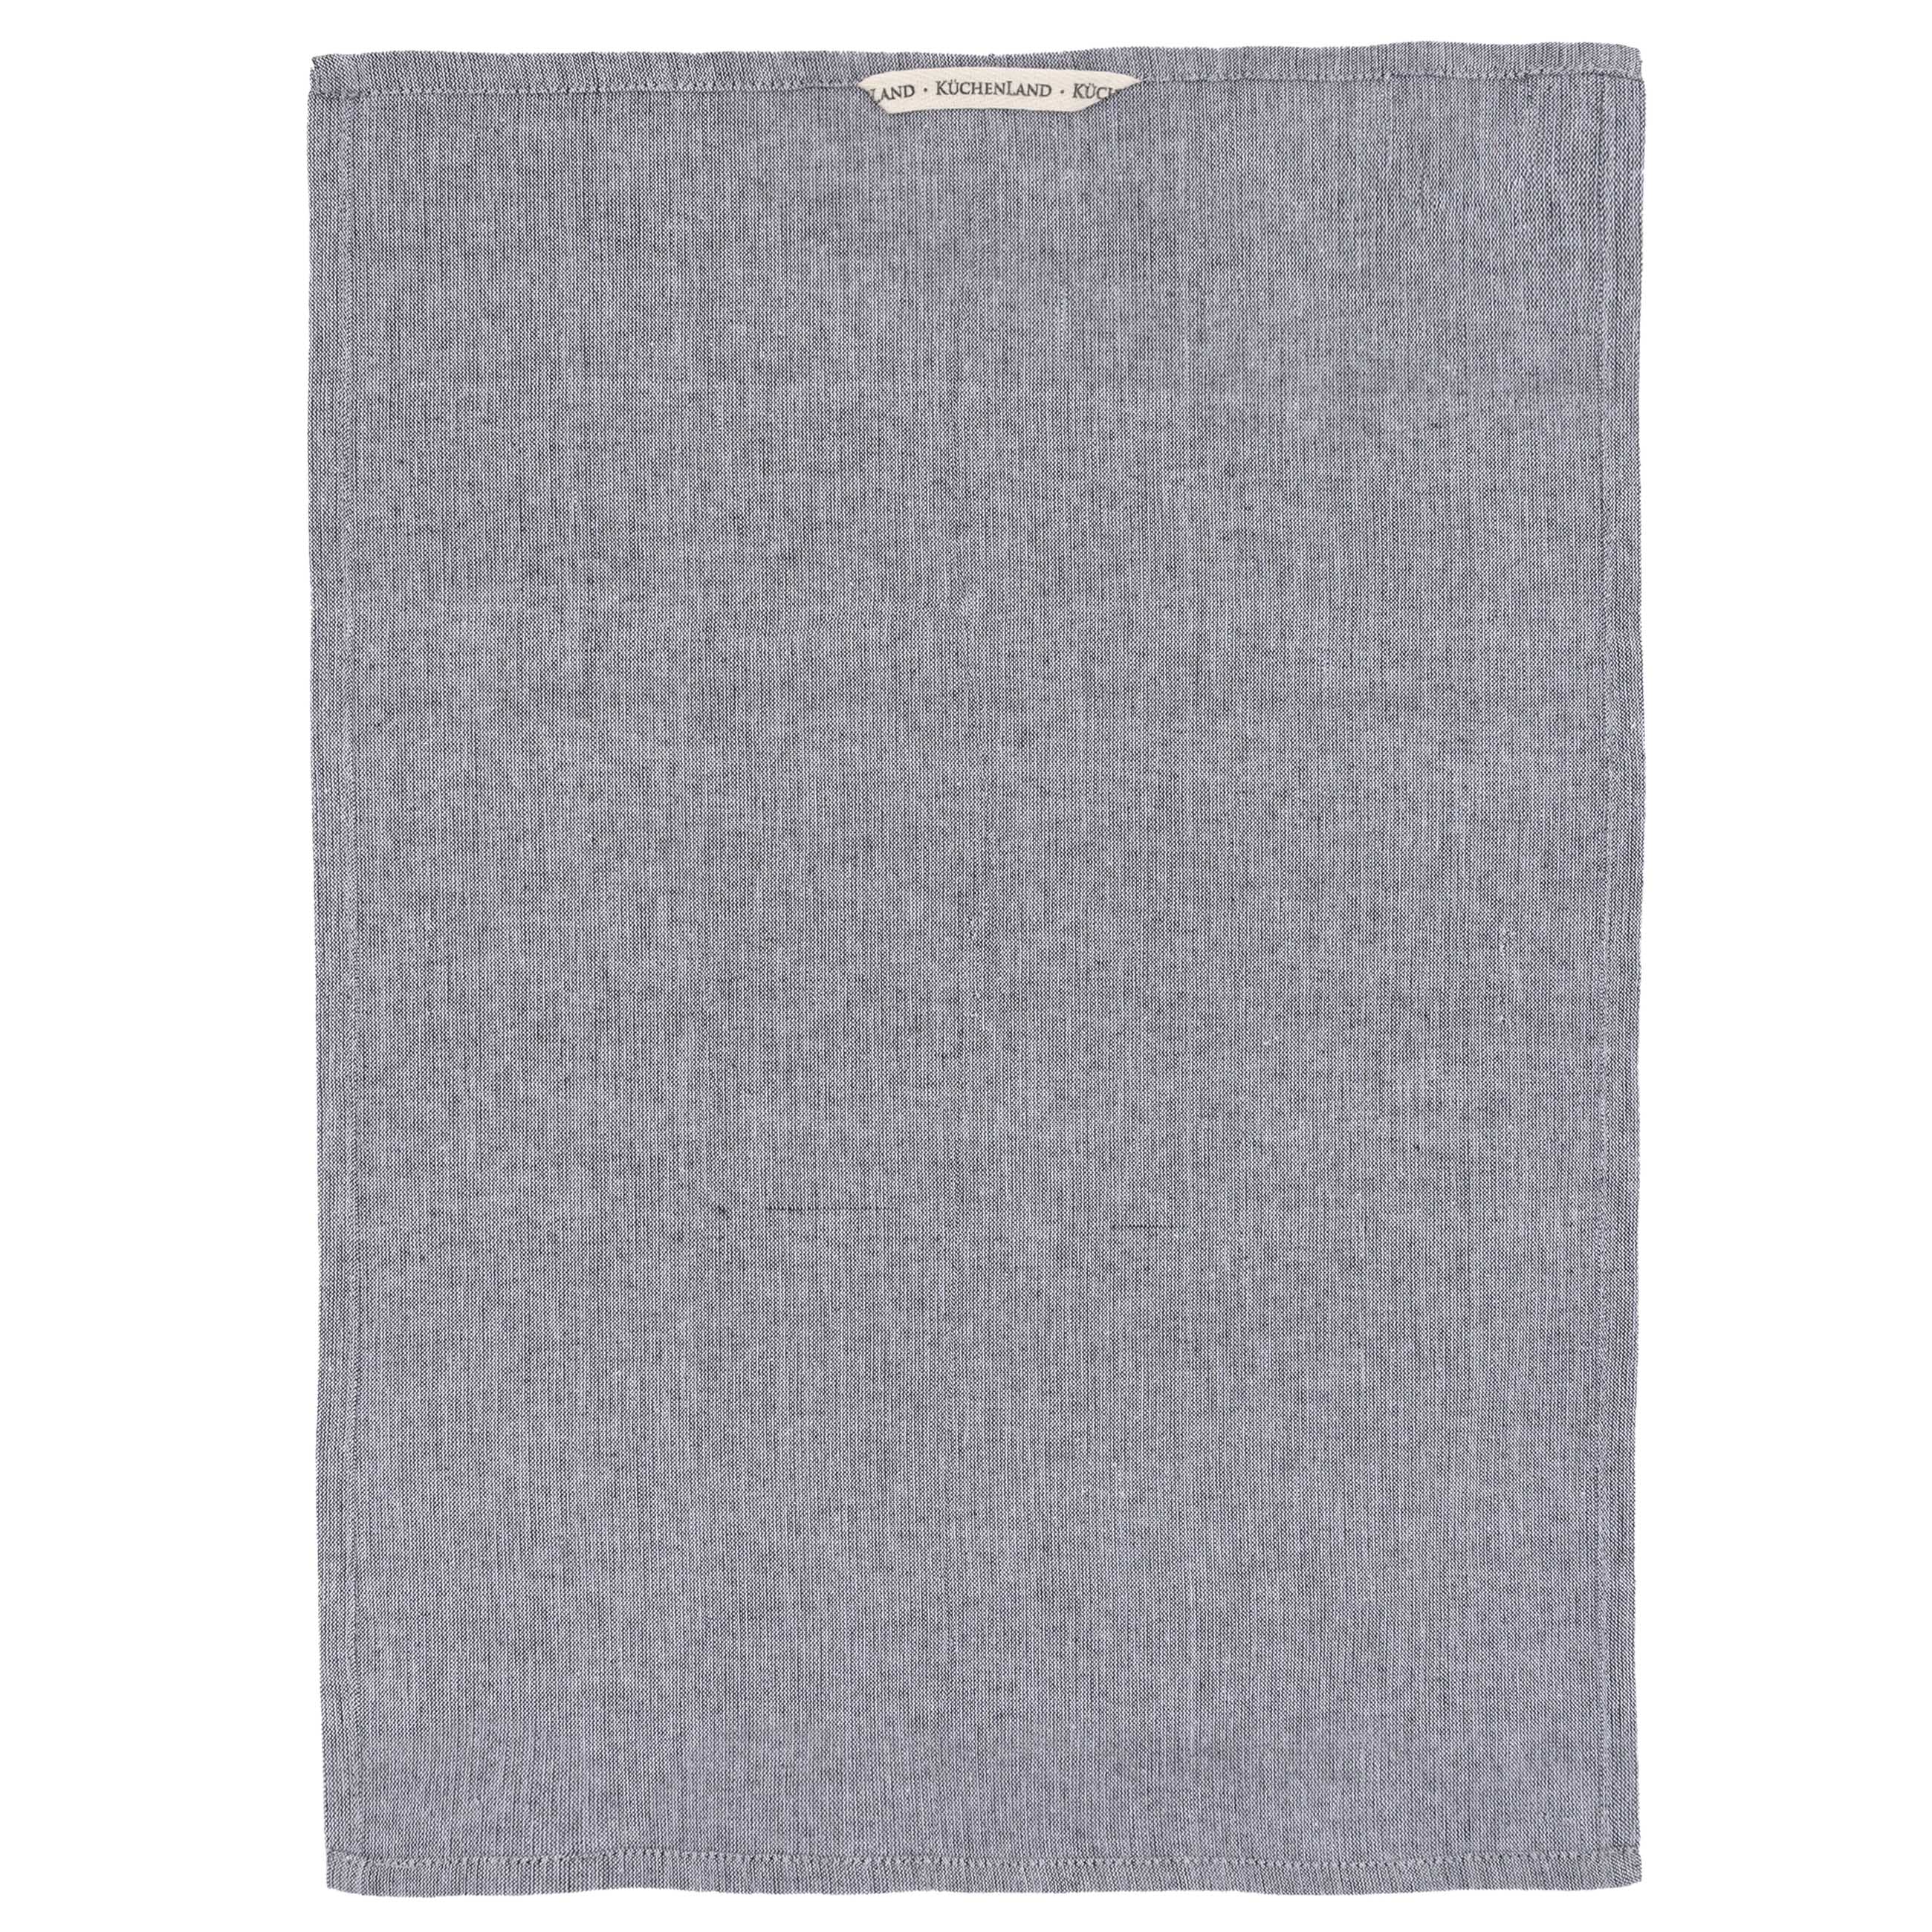 Полотенце кухонное, 40х60 см, хлопок, серый меланж, Melange grey изображение № 2